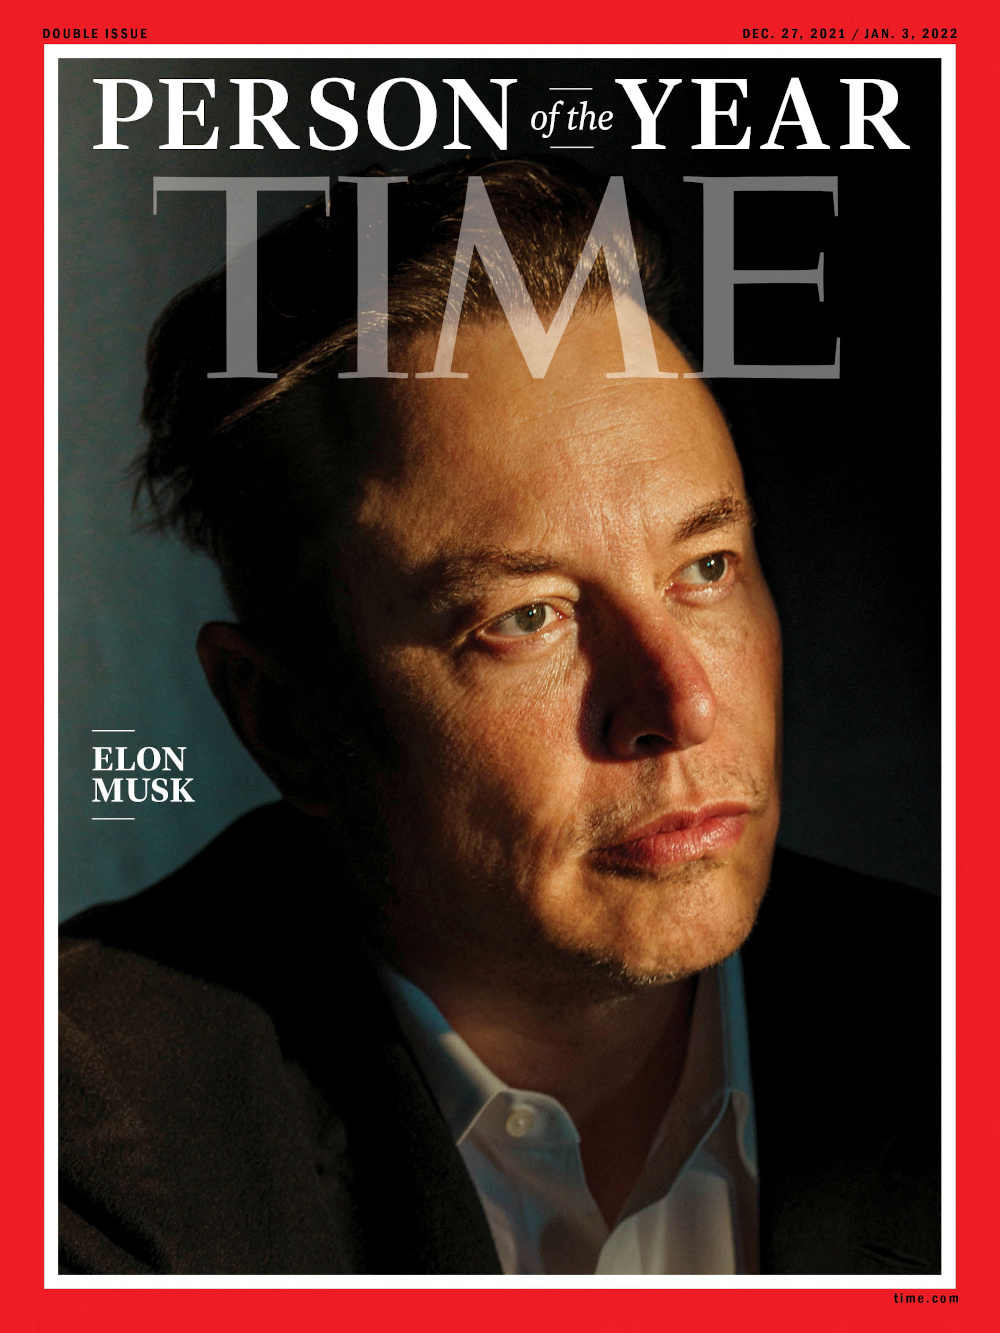 Le fils de 3 ans d'Elon Musk, X Æ A-Xii, vole la vedette lors de la première étoilée de New York